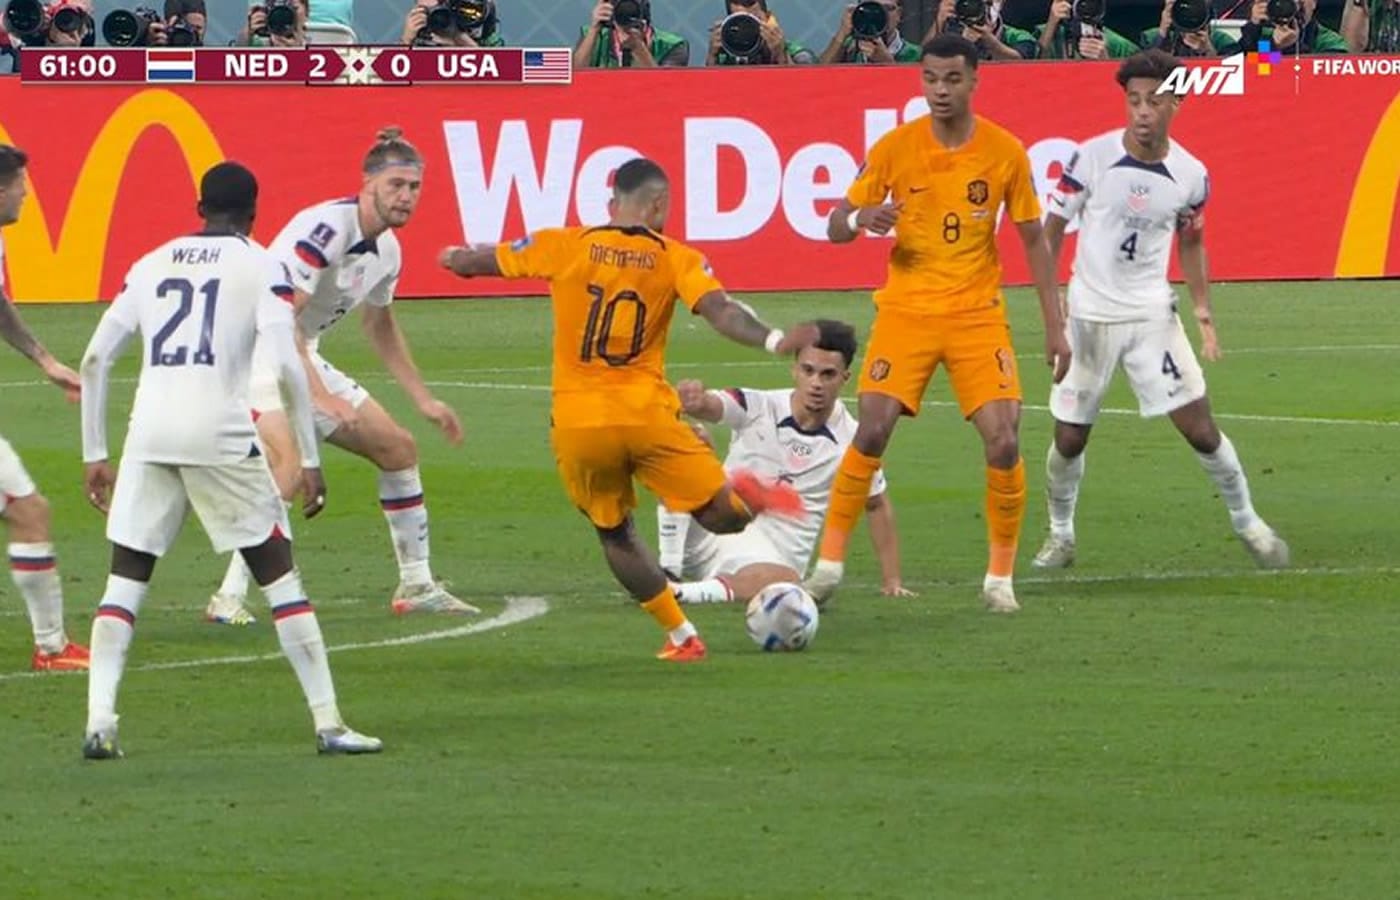 Η Ολλανδία με τα τρία γκολ που πέτυχε απέναντι στις ΗΠΑ κατάφερε να κλείσει μια θέση στα προημιτελικά του Παγκοσμίου Κυπέλλου ποδοσφαίρου